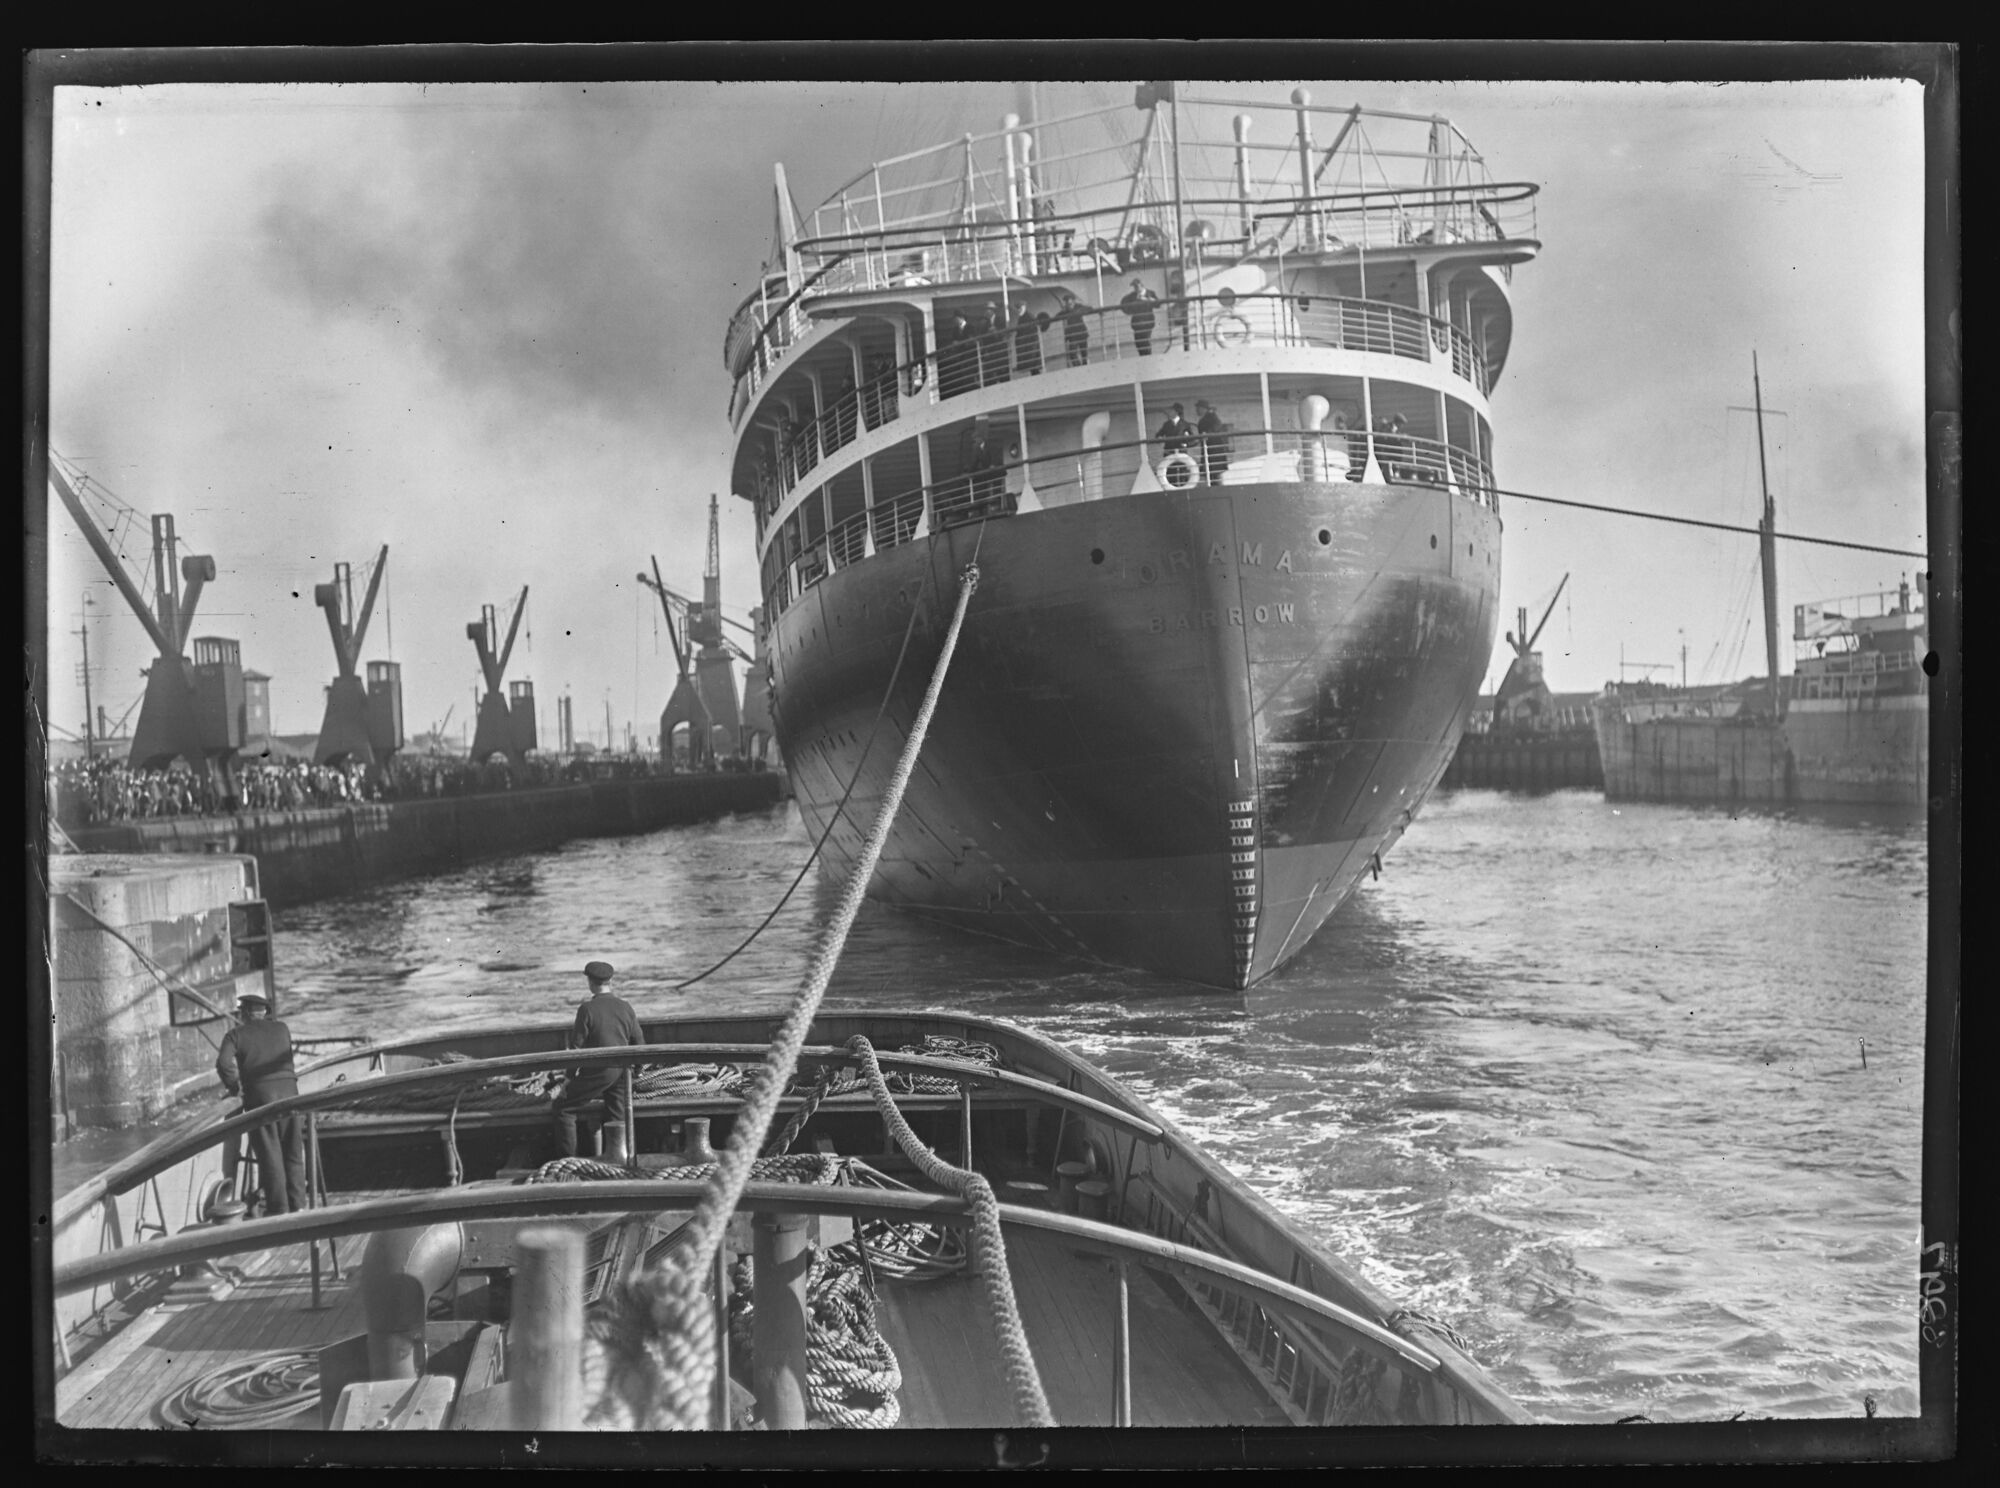 Twin Screw Steamship Orama leaving Ramsden Dock, Barrow-in-Furness